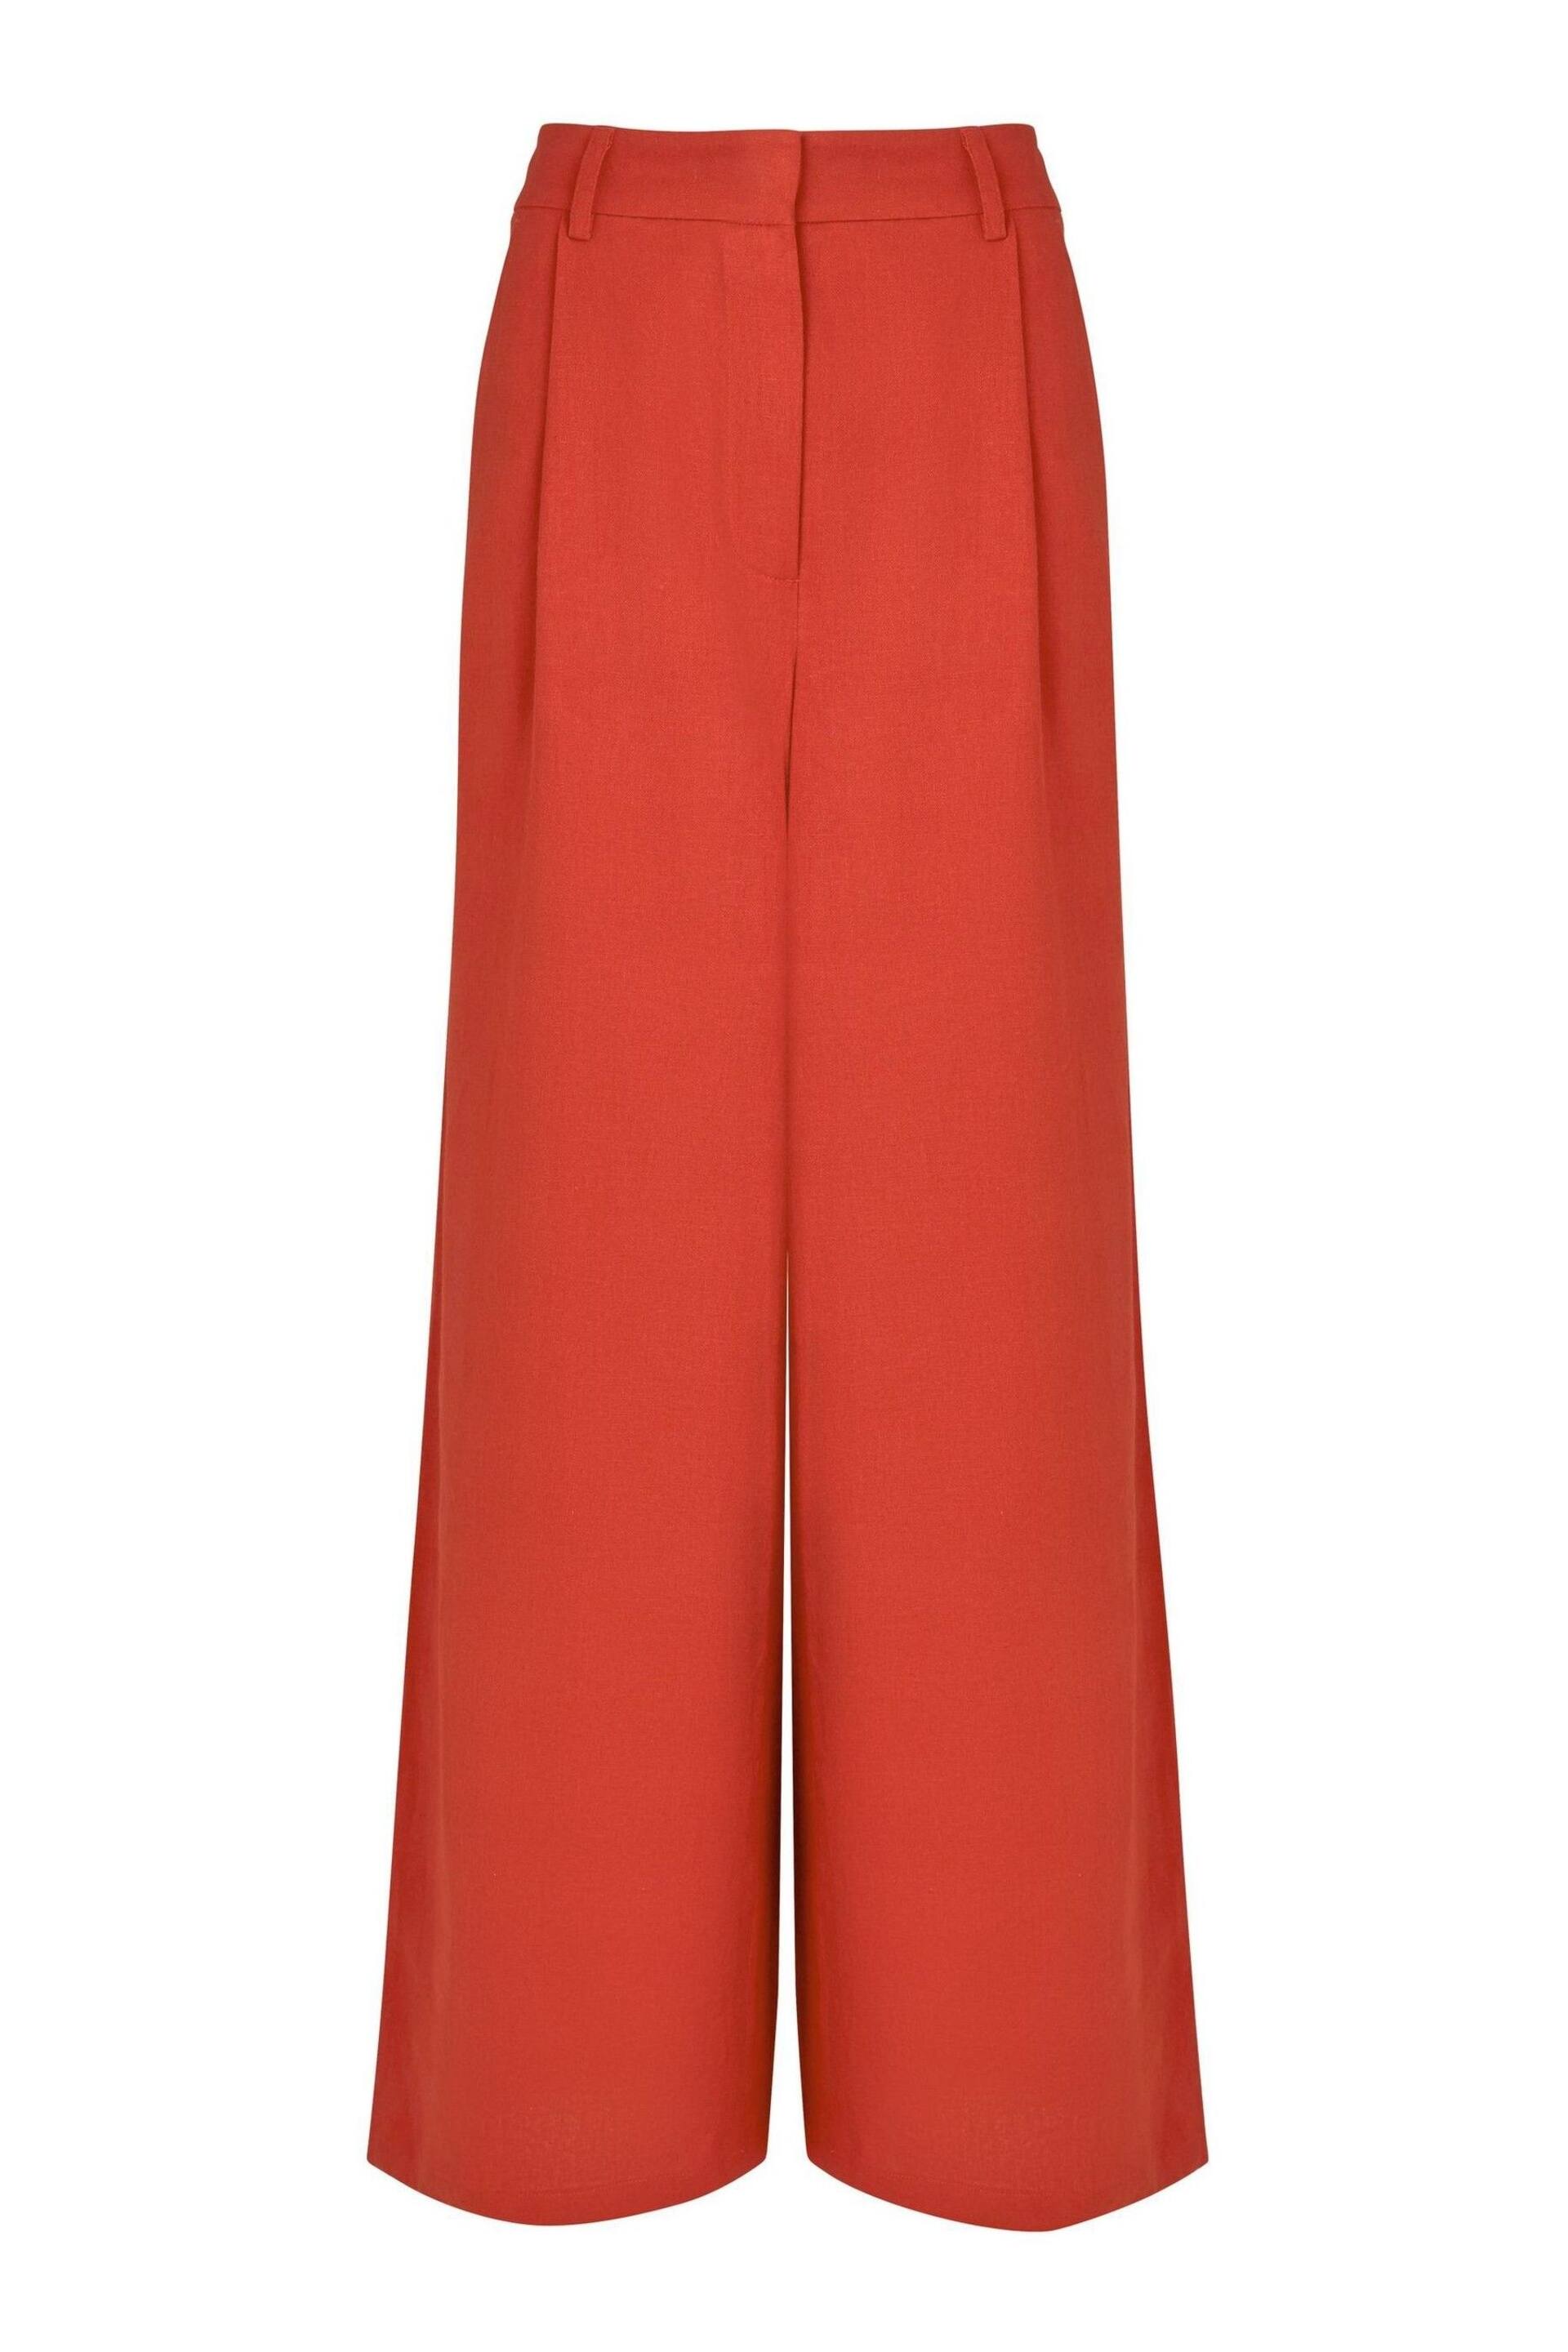 Joe Browns Orange Lyla Linen Blend Trousers - Image 5 of 5